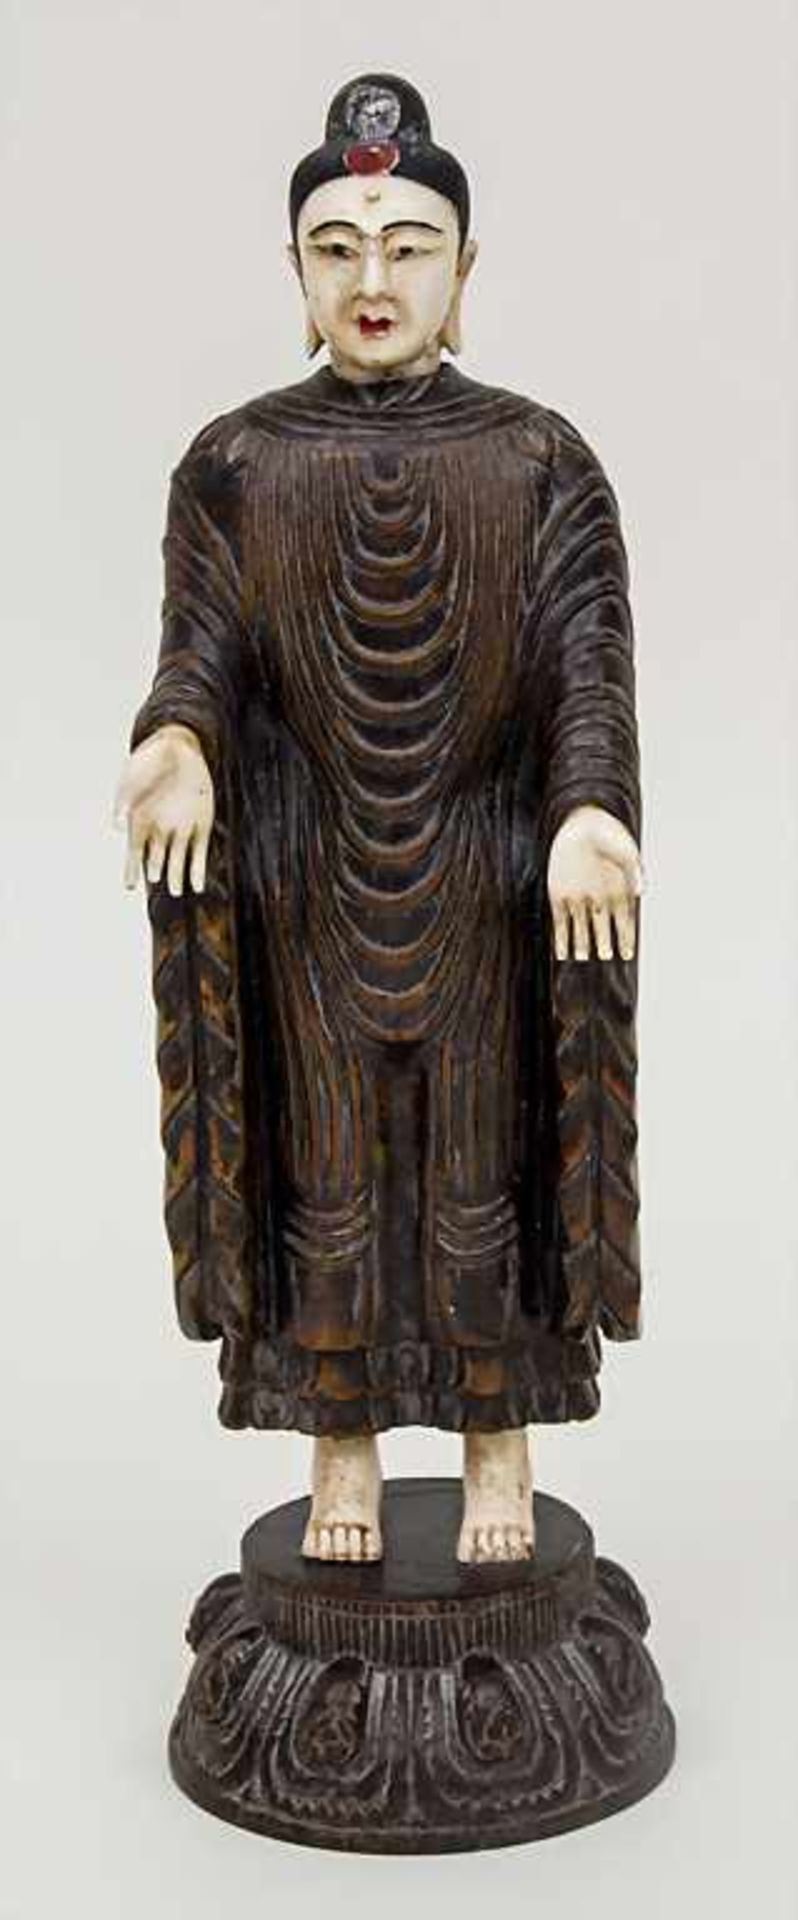 Stehender Buddha / A standing Buddha, Japan, 19. Jh. Material: Holz und Elfenbein,Epoche: wohl Edo-